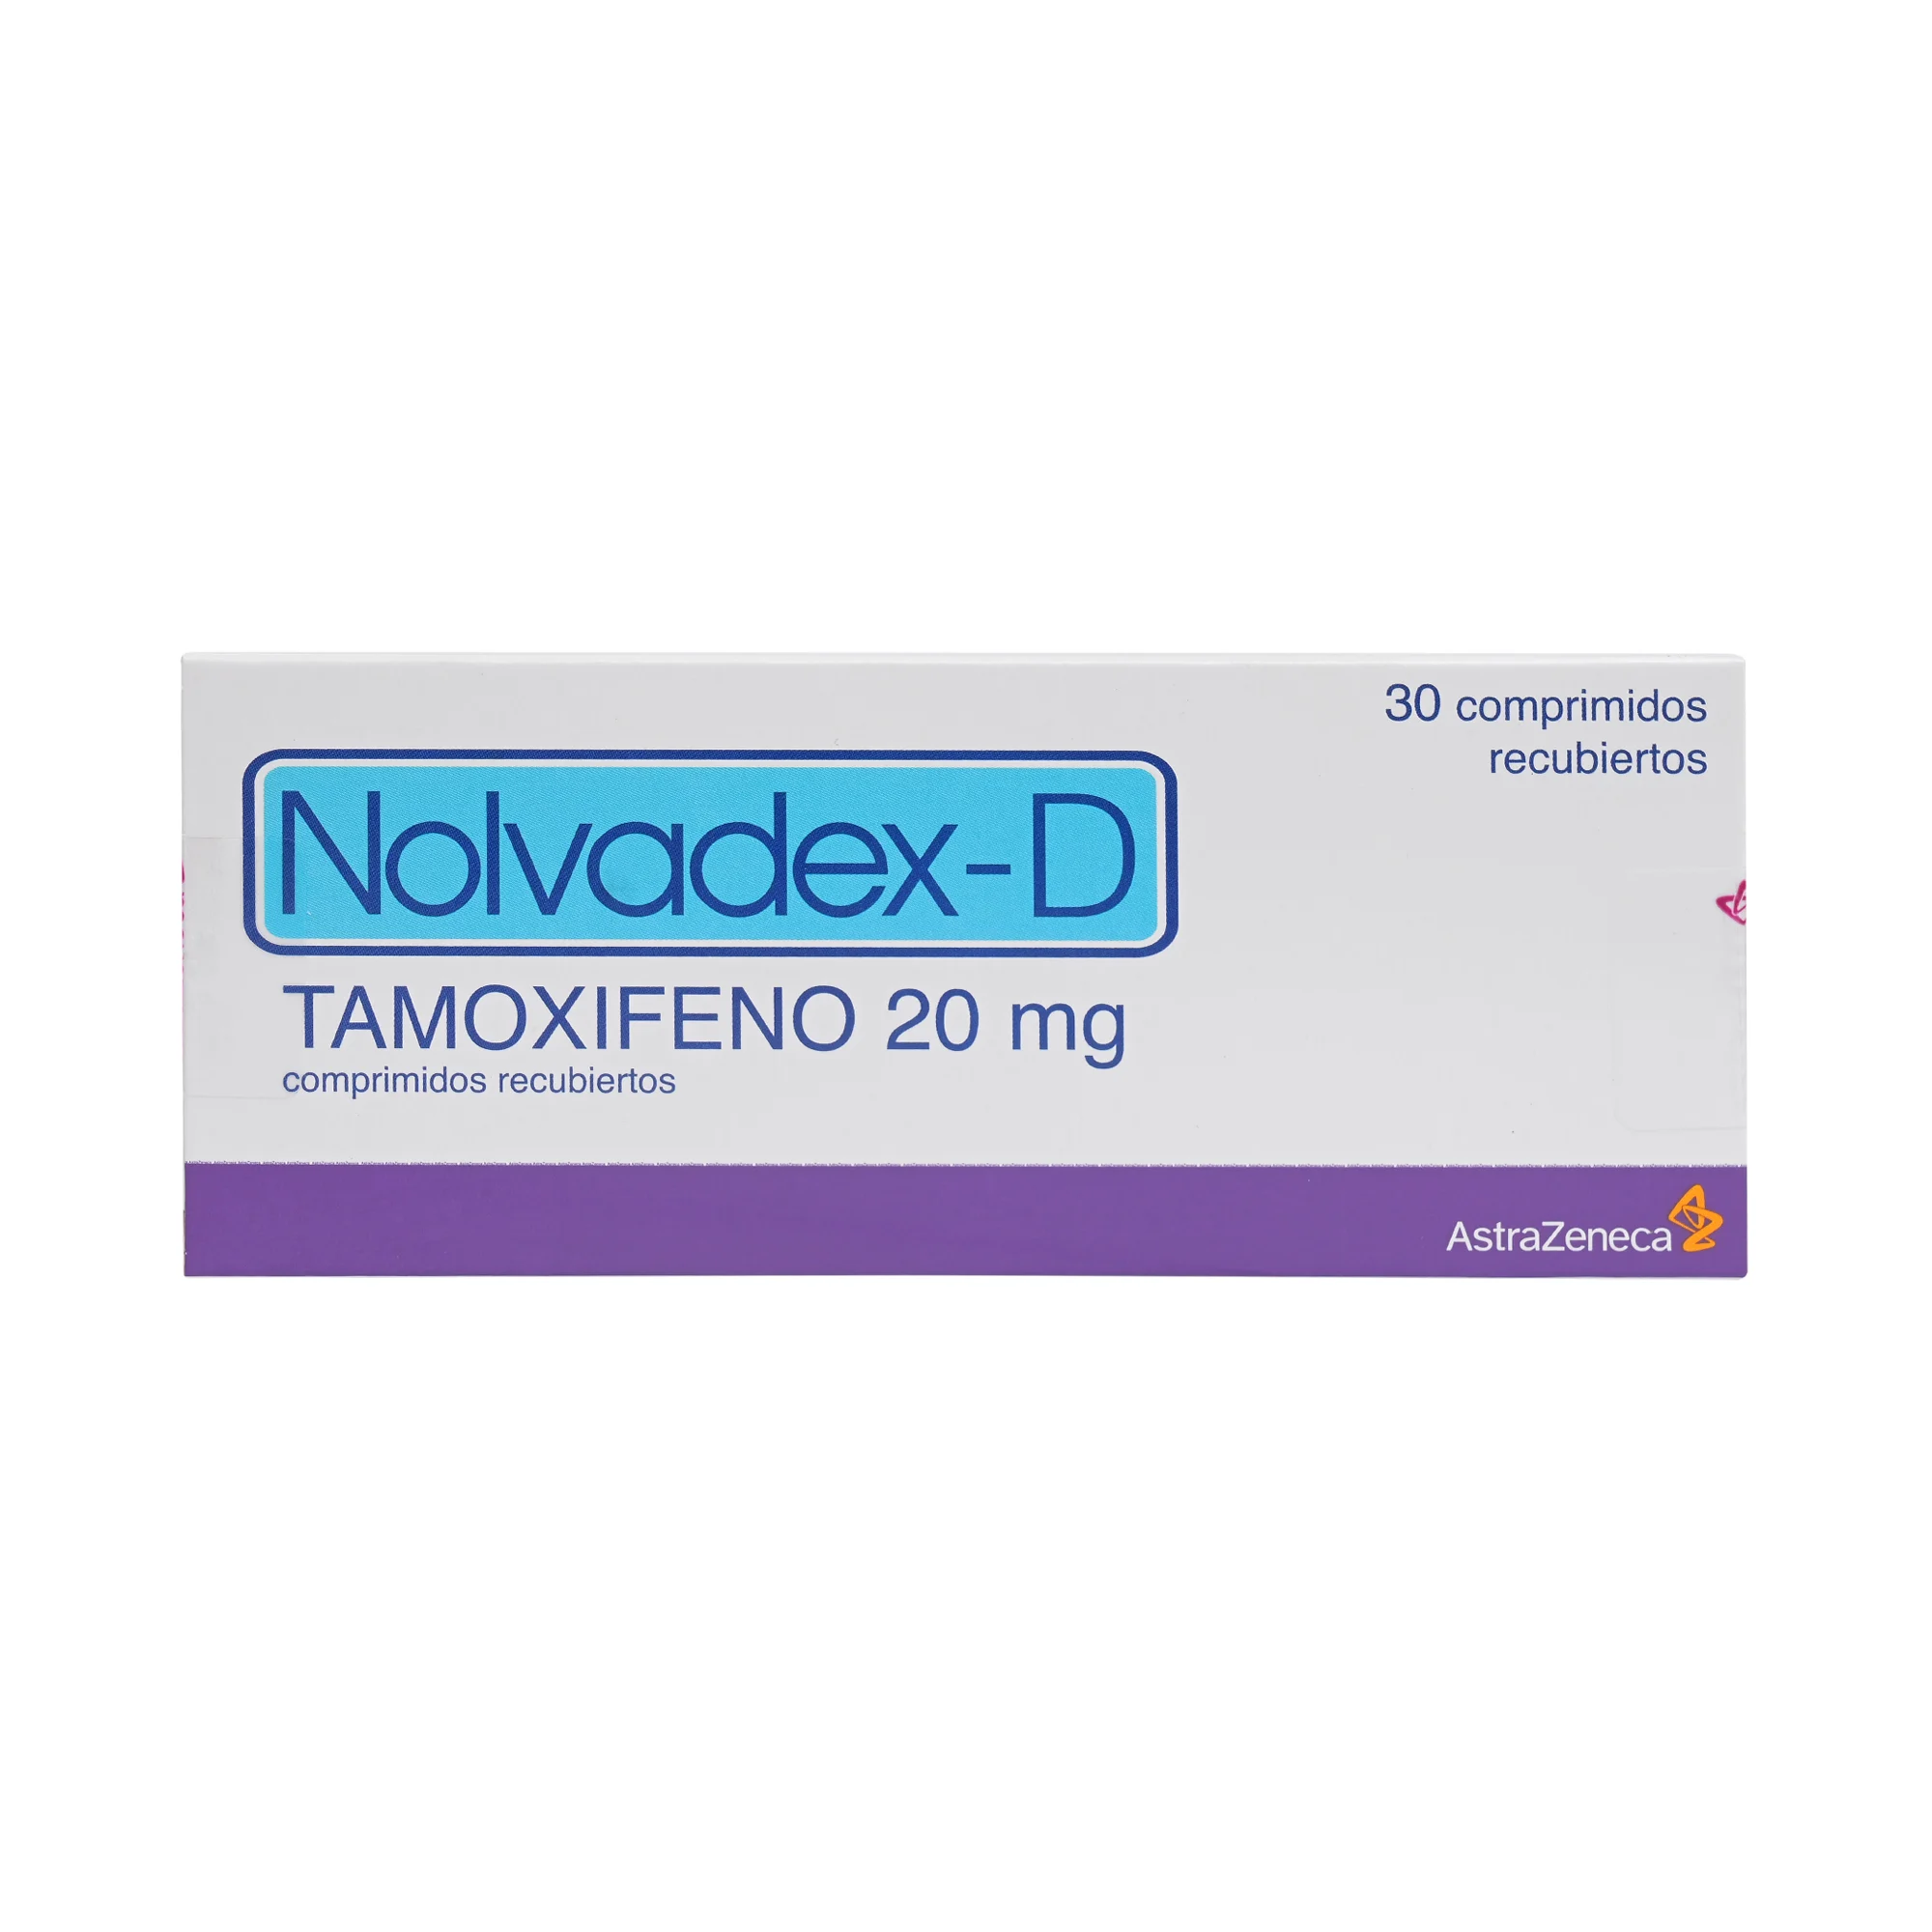 Nolvadex-D Tamoxifeno 20 mg 30 Comprimidos Recubiertos 